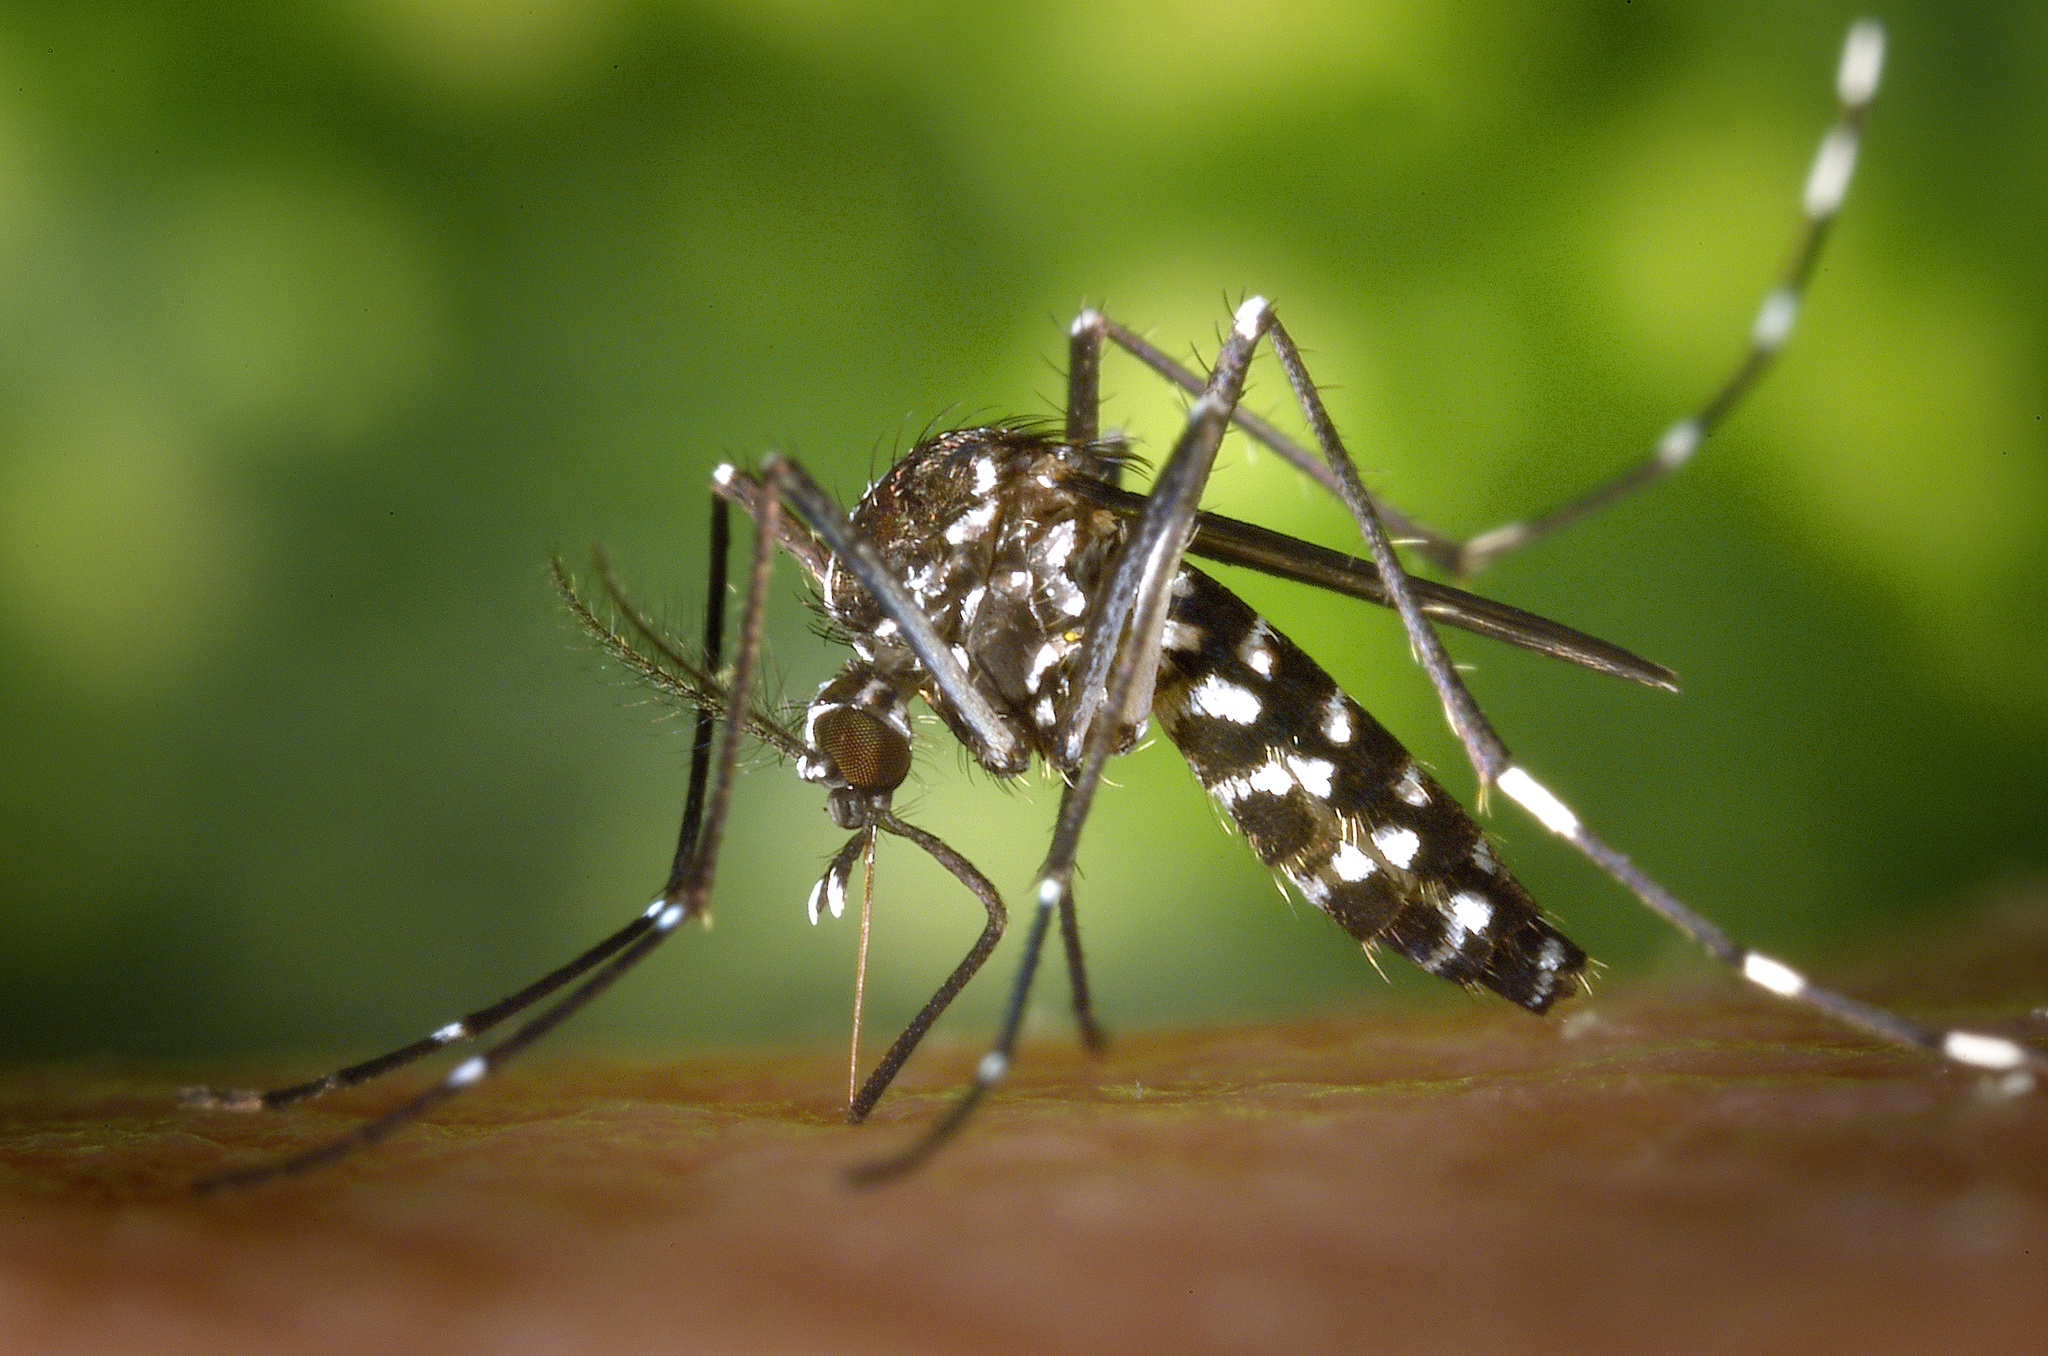 Un moustique transmettant la dengue ou le Zika détecté à Lisbonne, mais pas préoccupant |  Santé